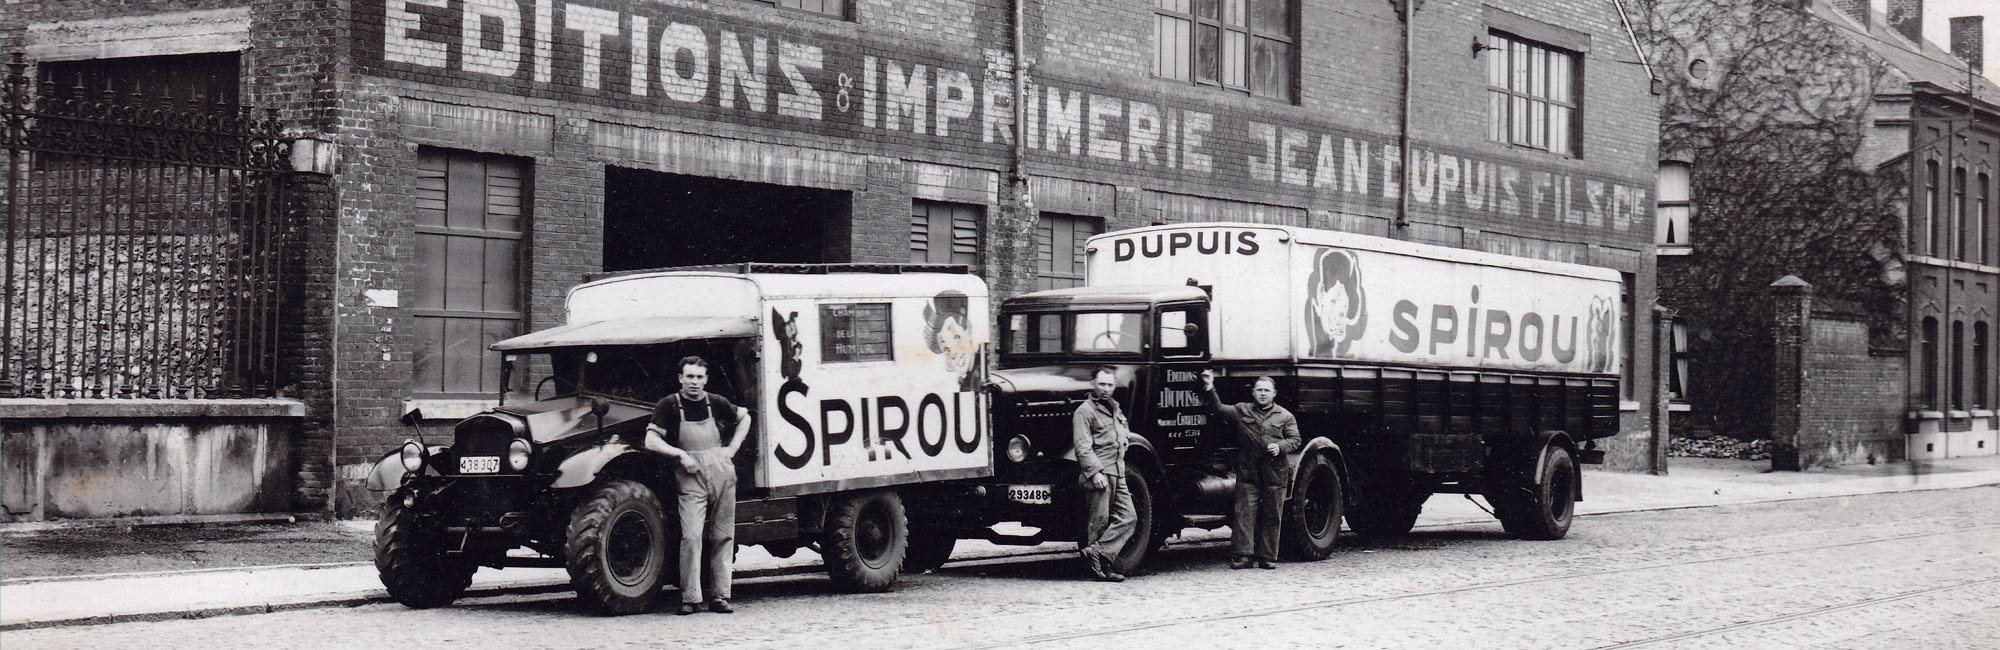 La fabrique Spirou Dupuis